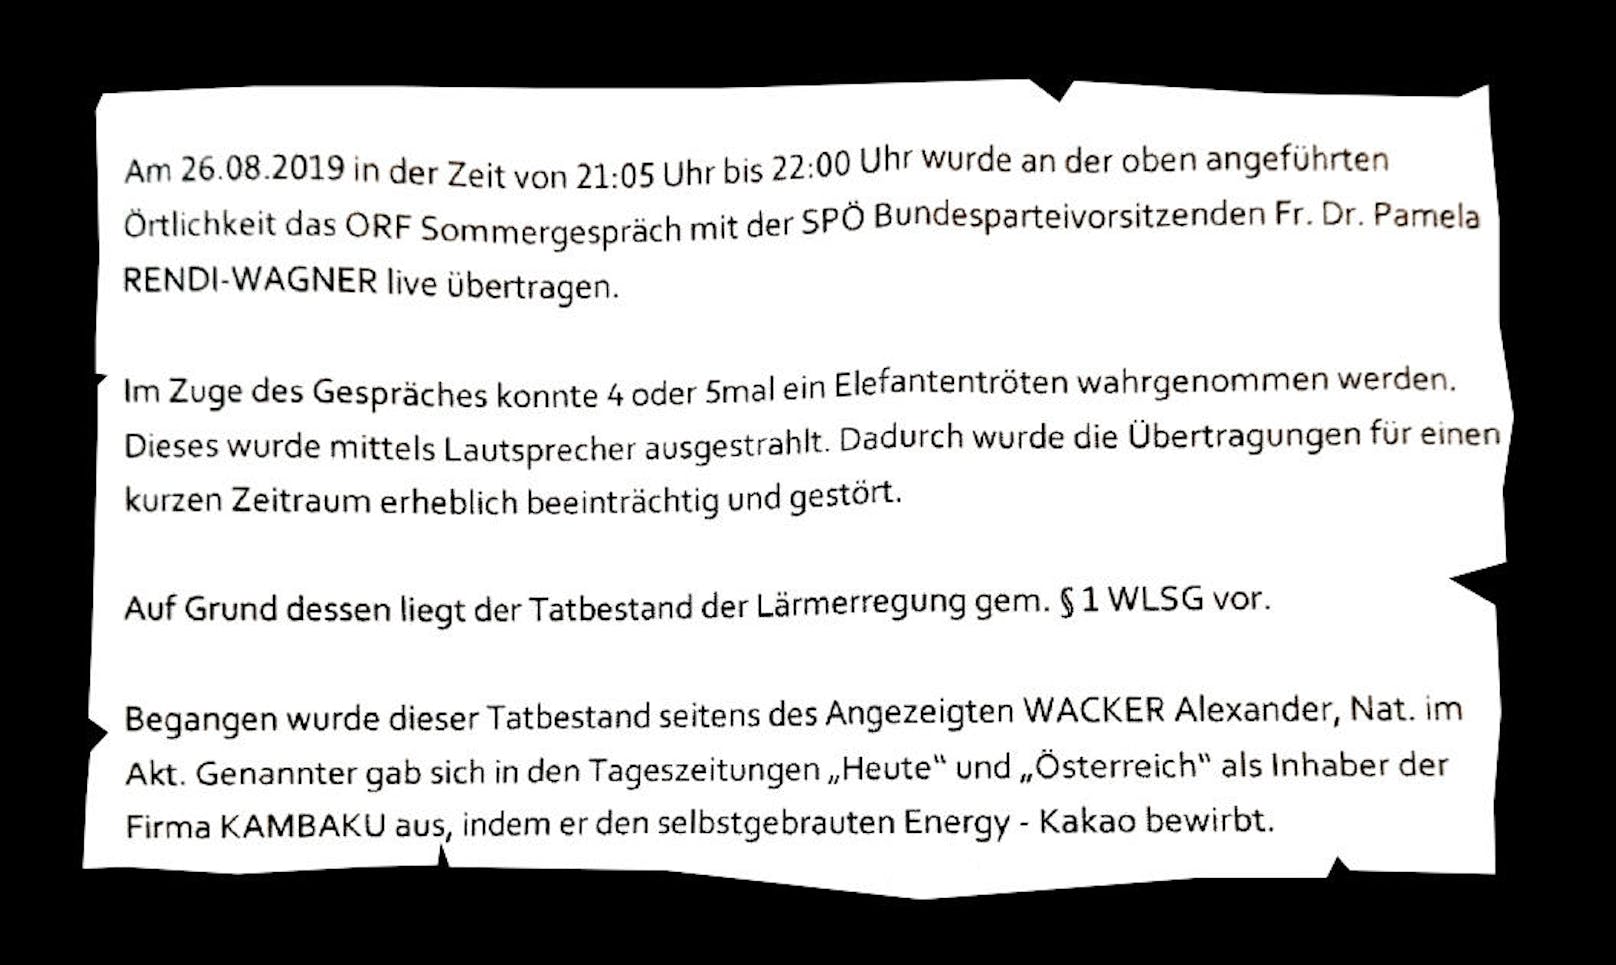 Nun erhielt Wacker eine Anzeige. Der ORF hatte ihn wegen Lärmerrgung angezeigt. Die Verwaltungsübertretung kann nach dem Wiener Landes-Sicherheitsgesetz mit einer Geldstrafe bis zu 700 Euro geahndet werden.